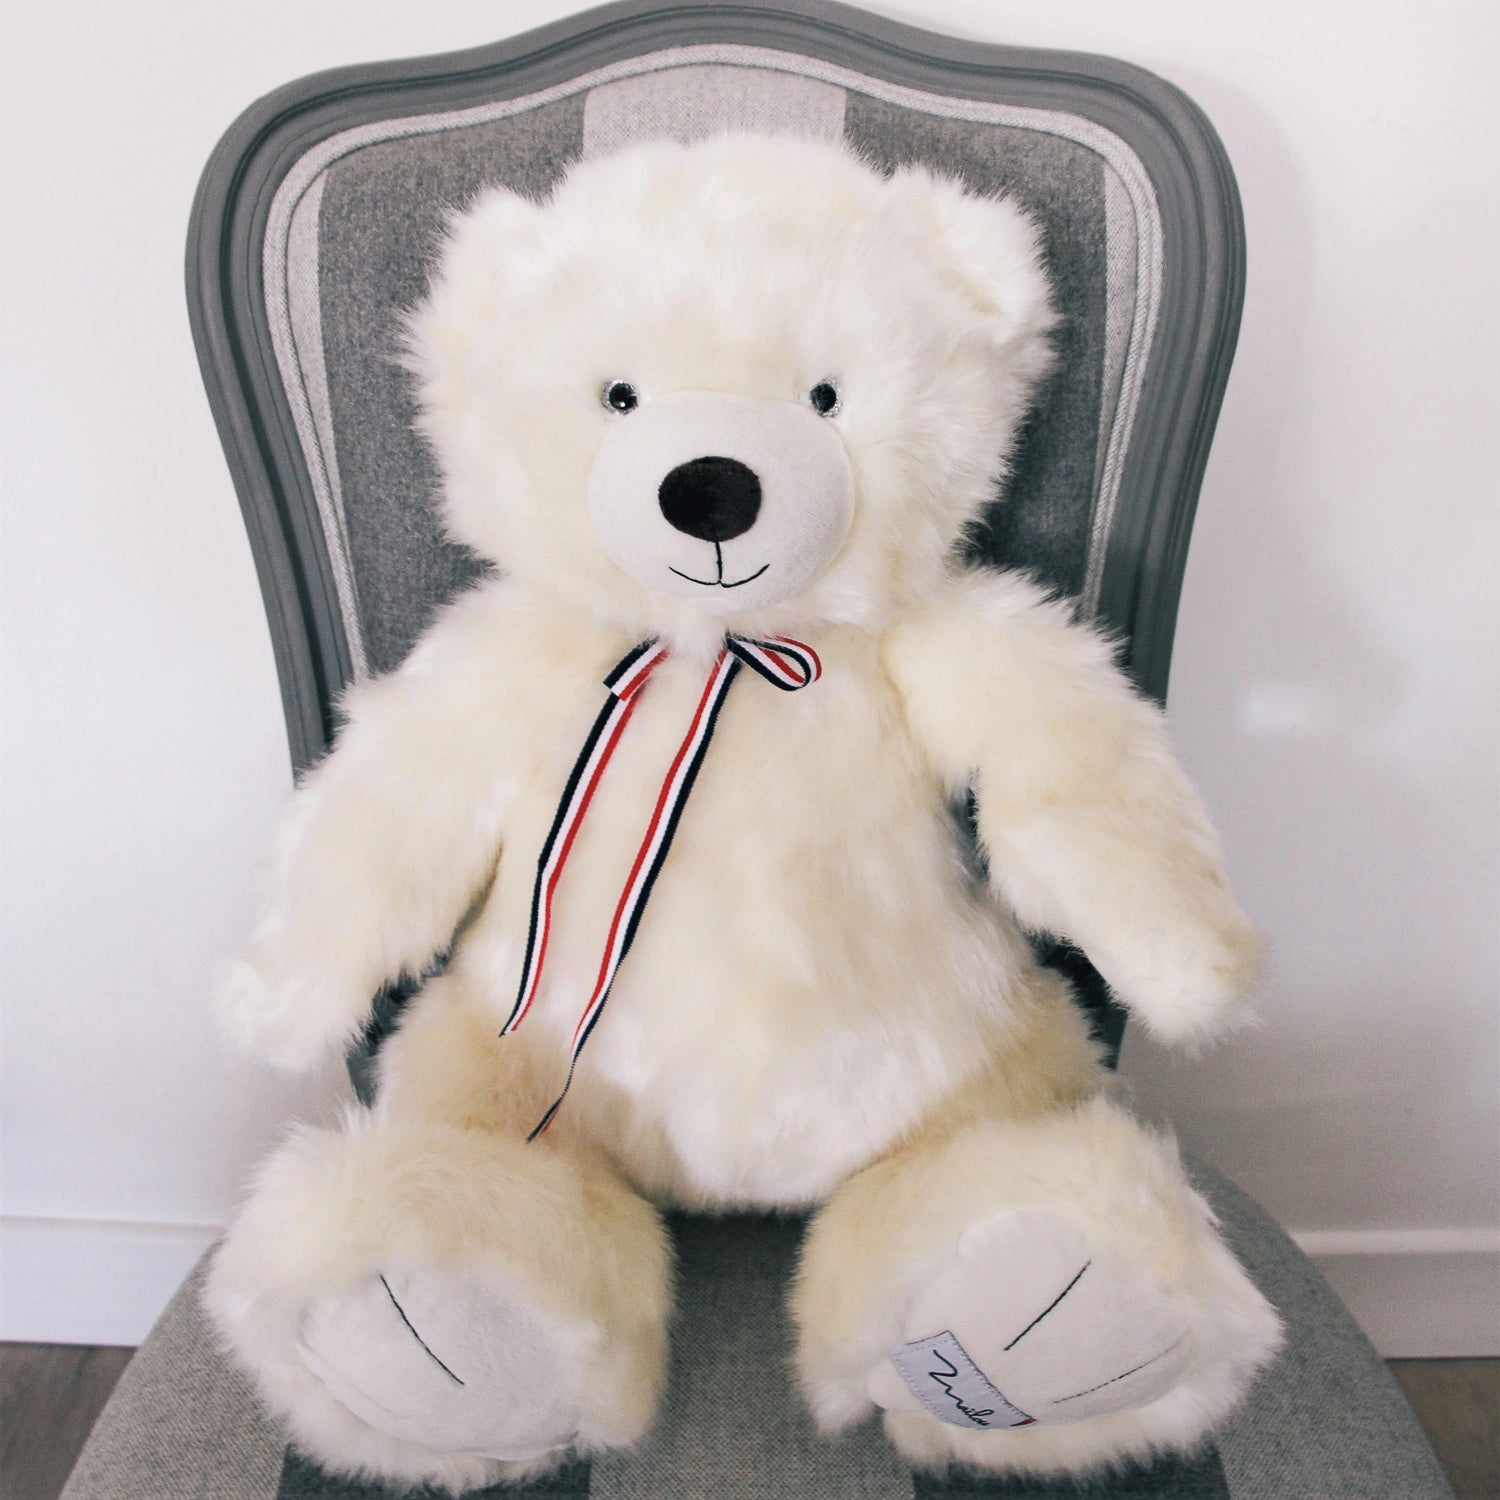 The French Teddy Bear 50 cm